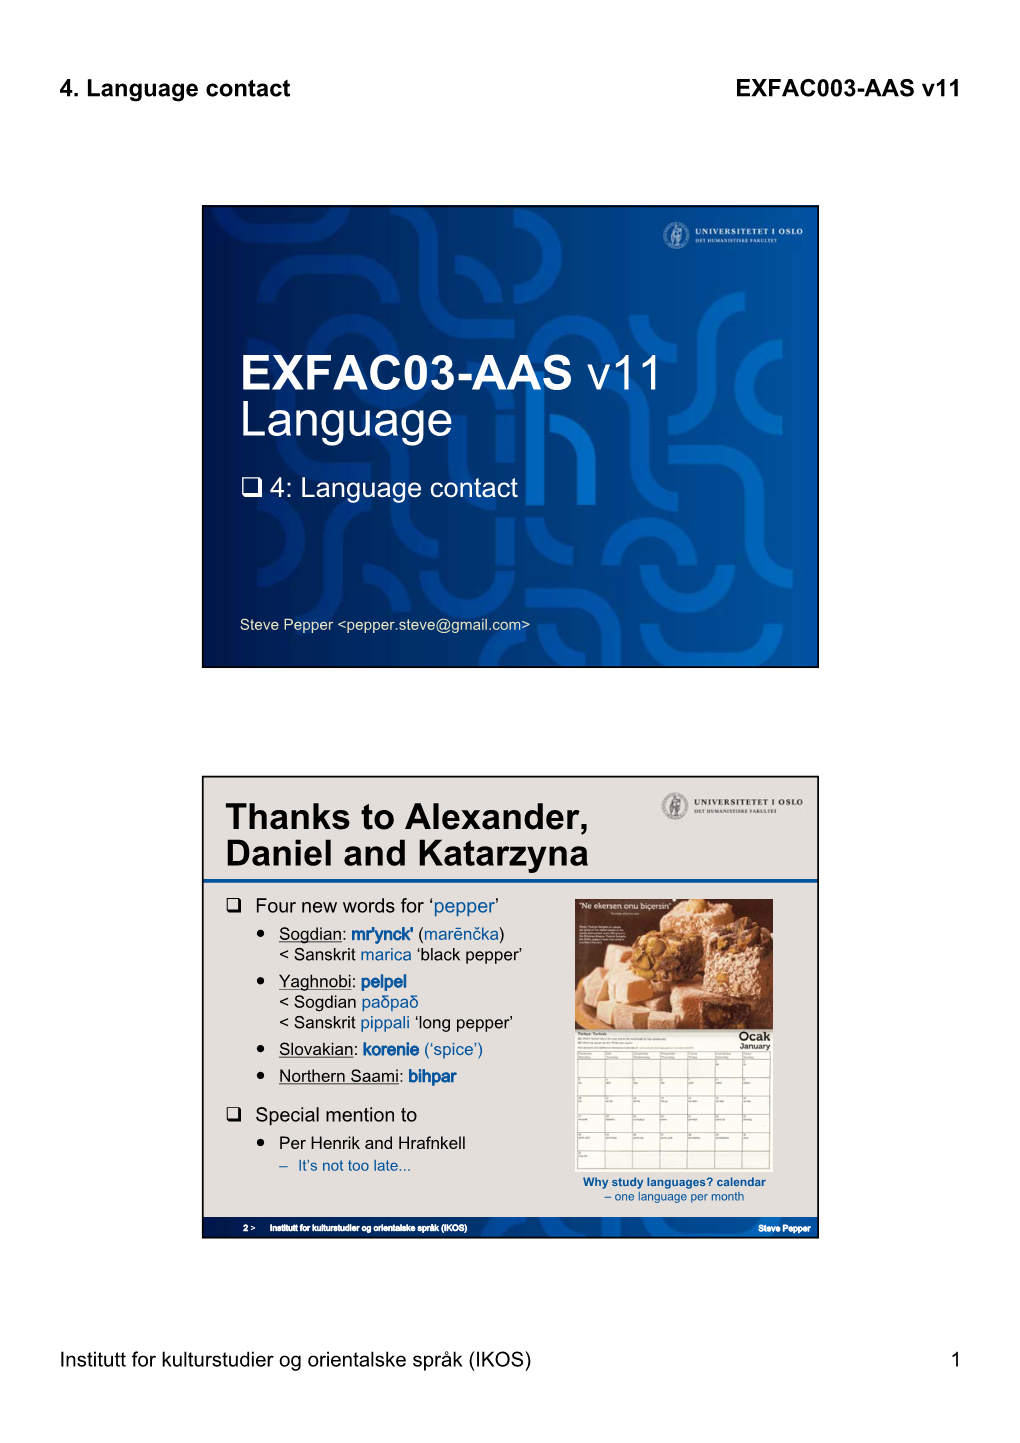 EXFAC03-AAS V11 Language